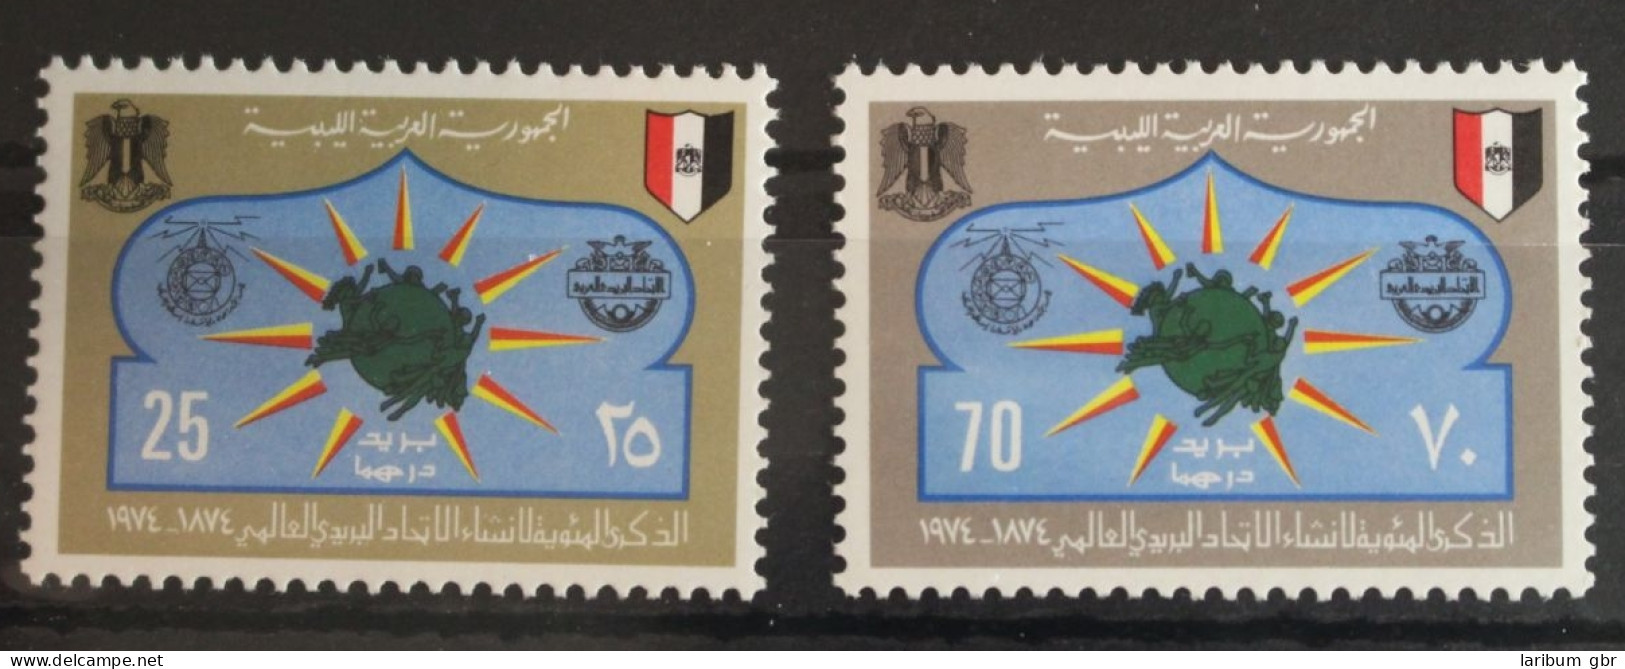 Libyen 458-459 Postfrisch #FQ008 - Libya